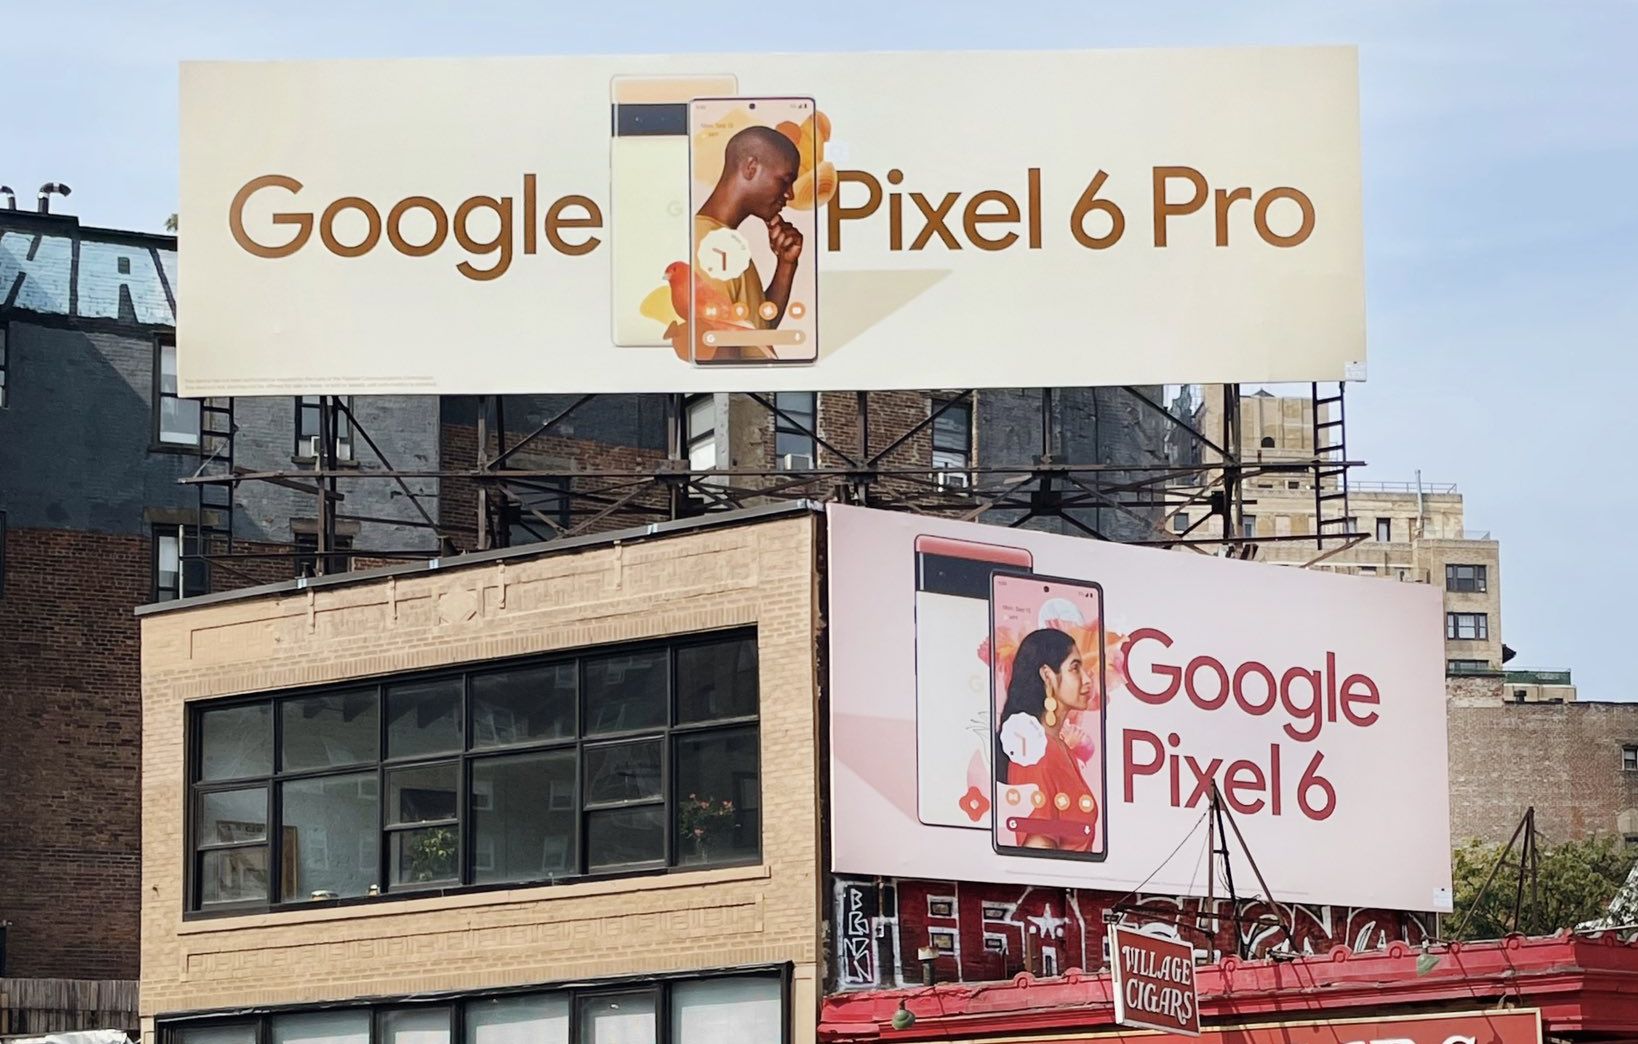 Pixel 6 professional billboard